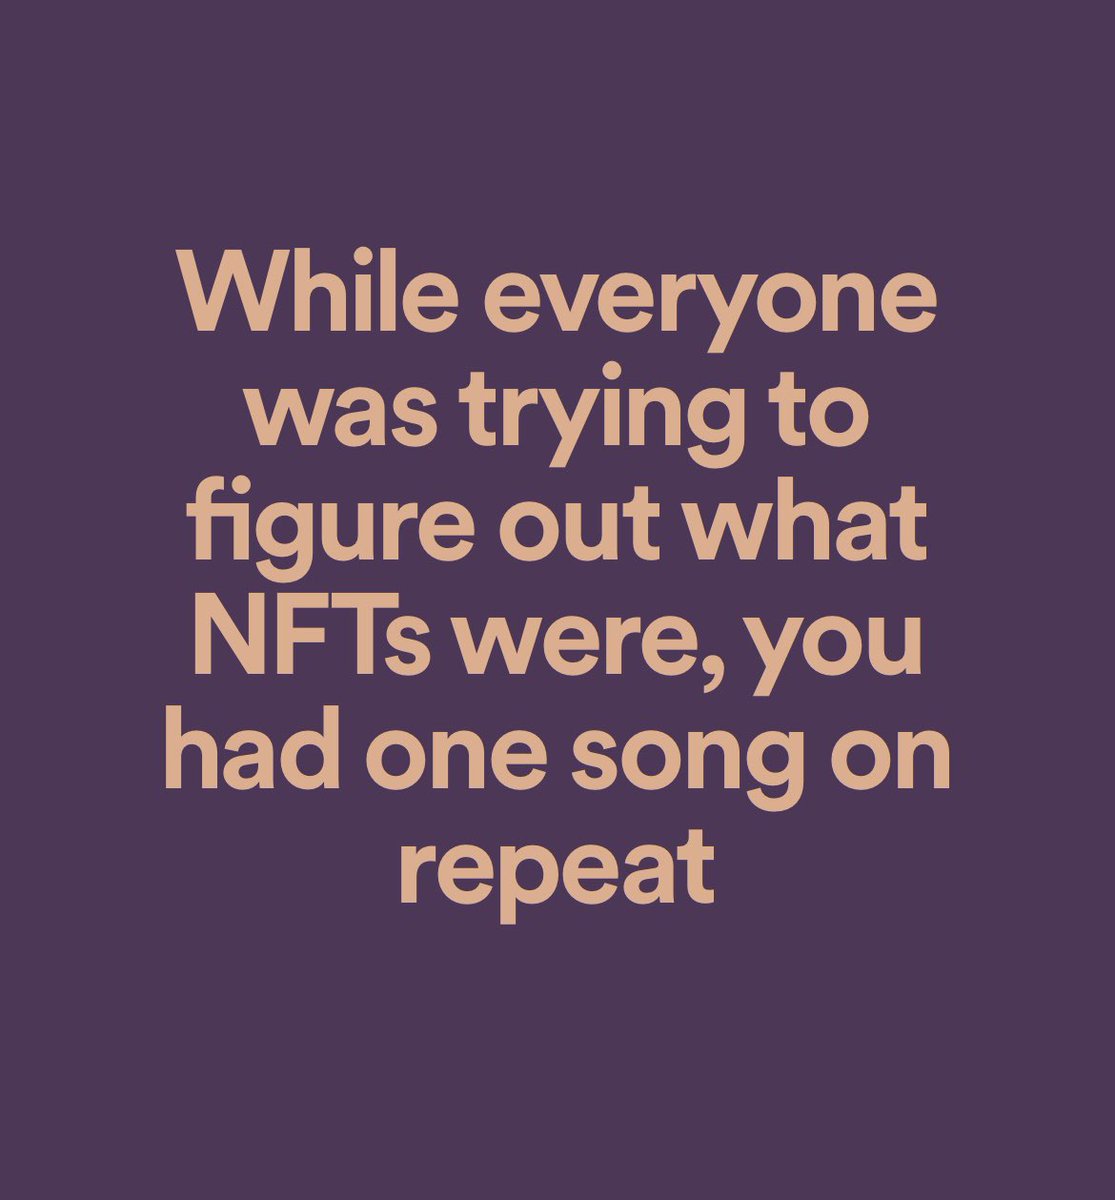 Message de Spotify : « Lorsque tout le monde tentait de savoir ce que sont les NFT, tu écoutais une chanson en boucle ». Finalement Spotify ne s’intéresse-t-elle pas aux NFT ? 